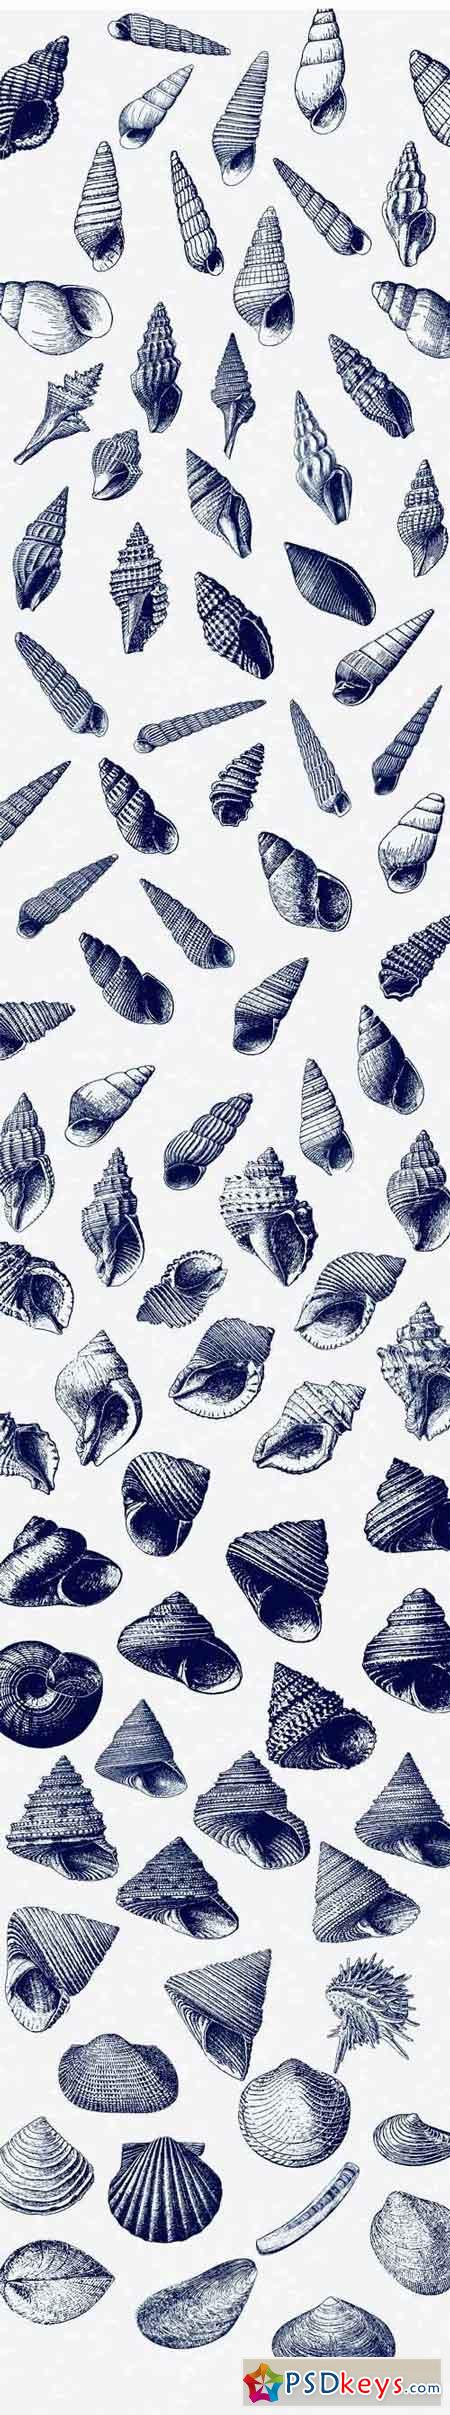 Seashell Illustration Mega Bundle 1433506